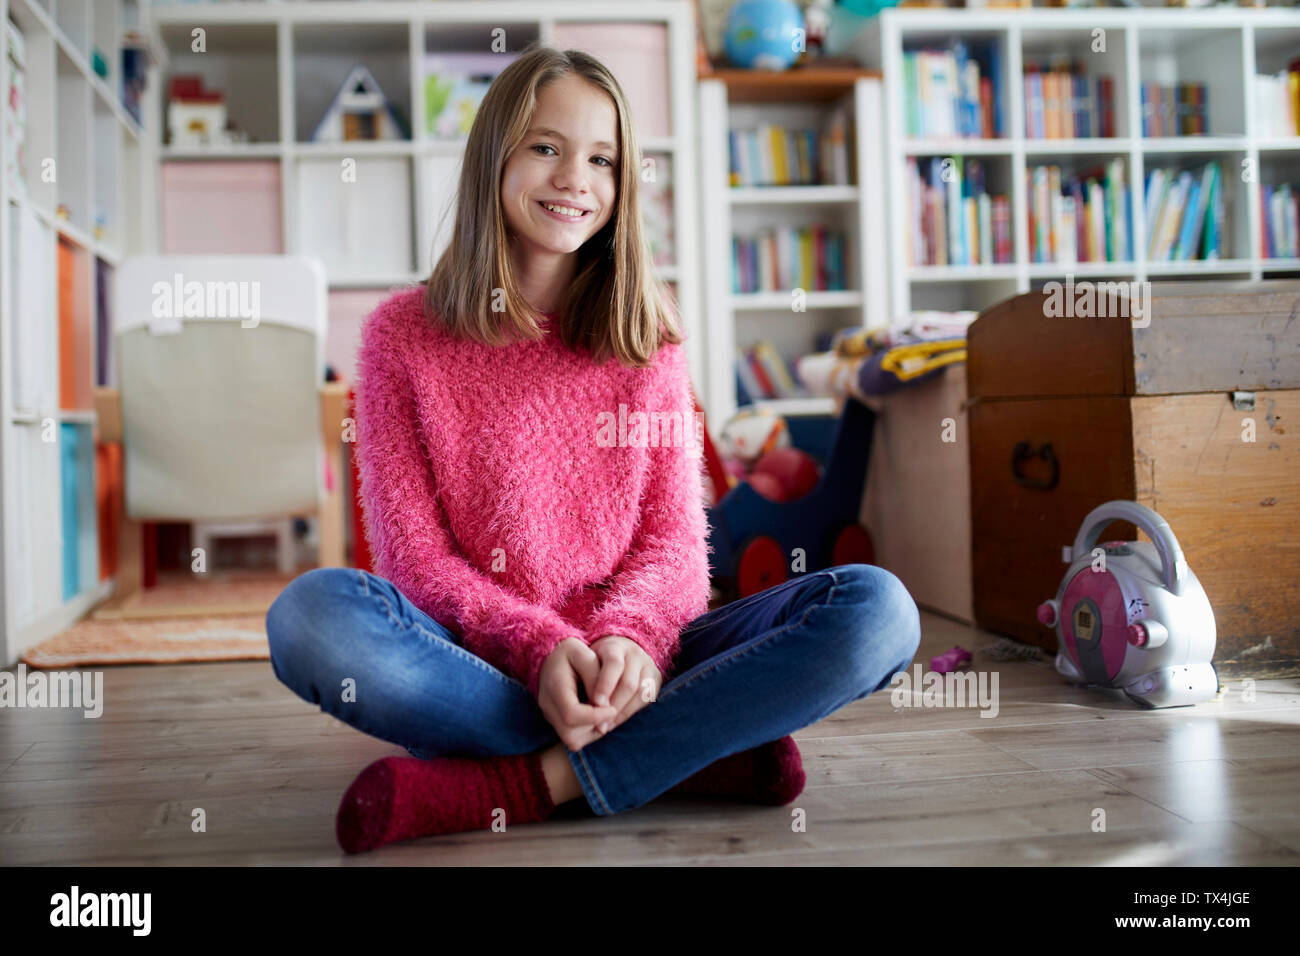 Seguro chica sentada con las piernas cruzadas en el piso de su habitación Foto de stock